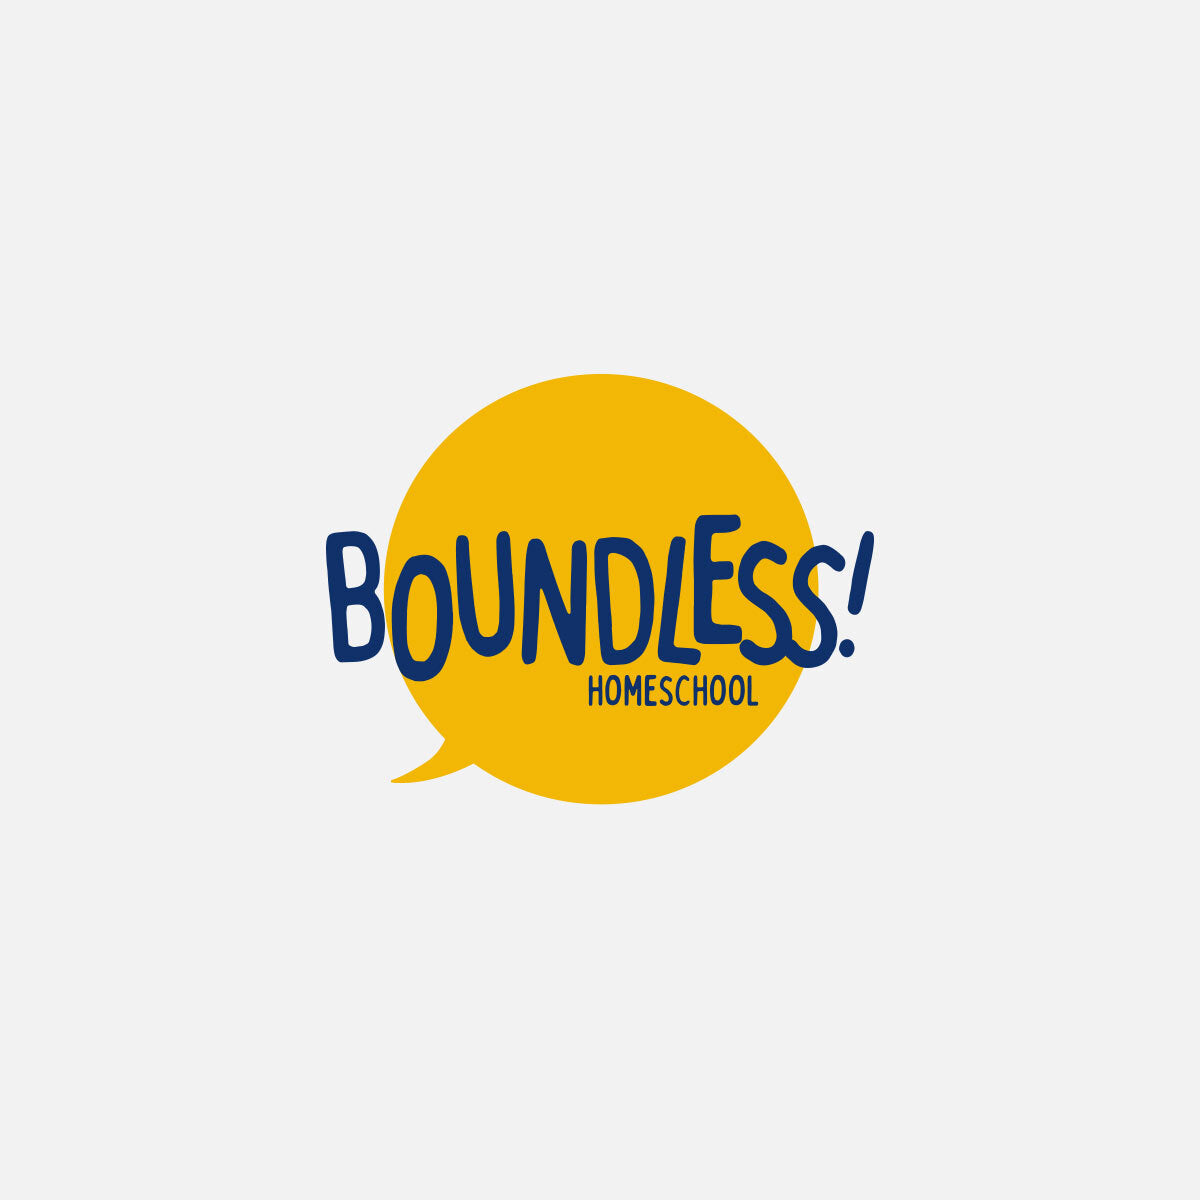 Meet the Boundless Homeschool Advisors